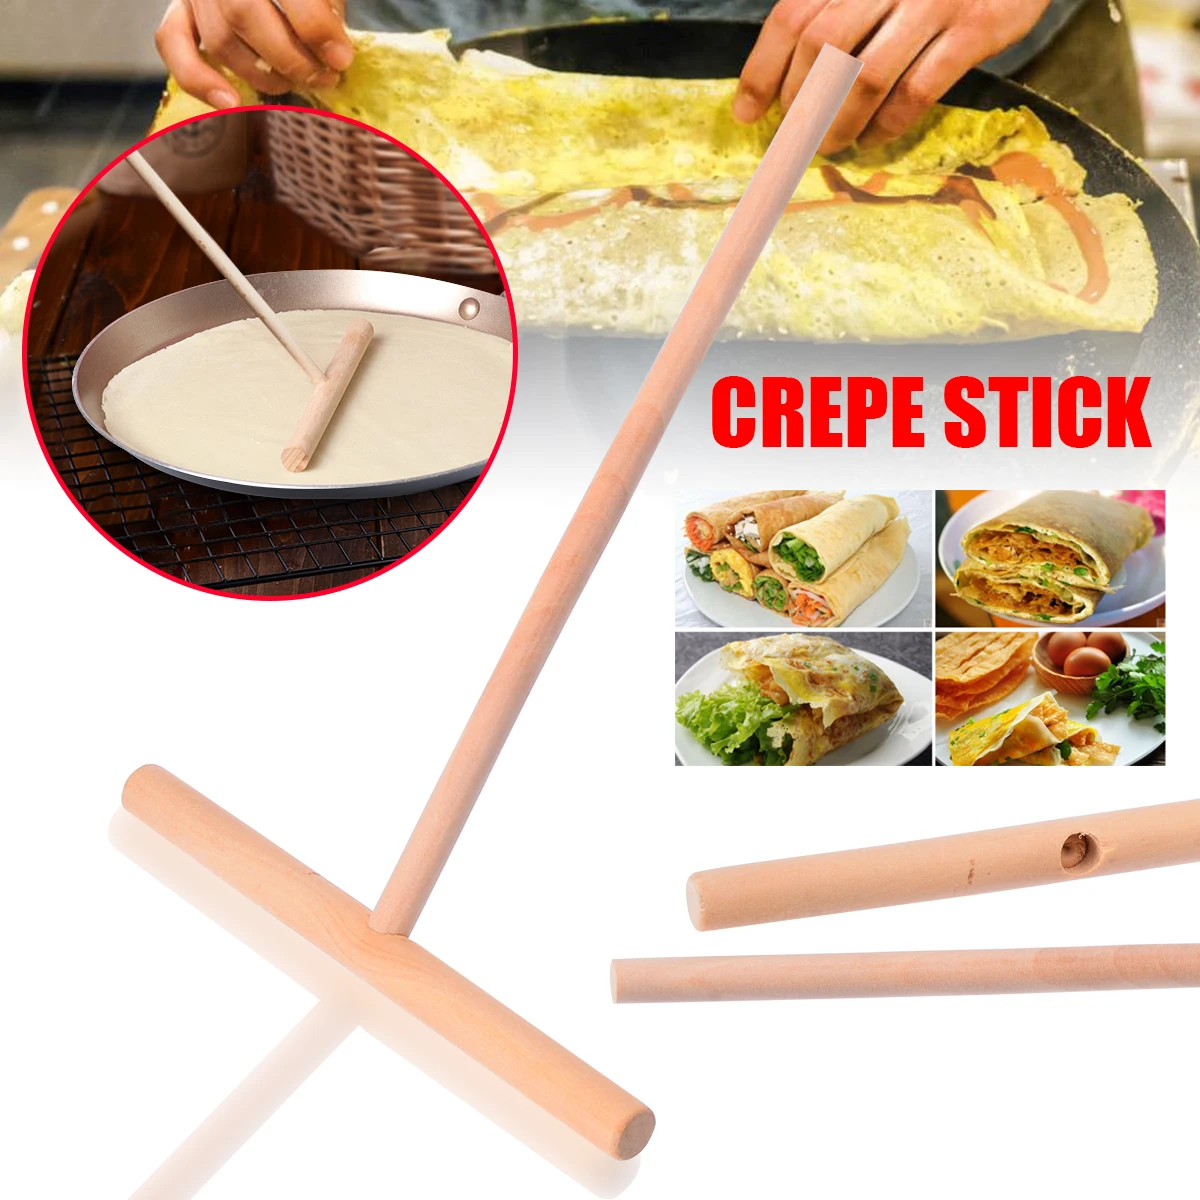 Details about   T Shape Crepe Maker Pancake Batter Wooden Spreader Stick Home Kitchen Tool Lin 